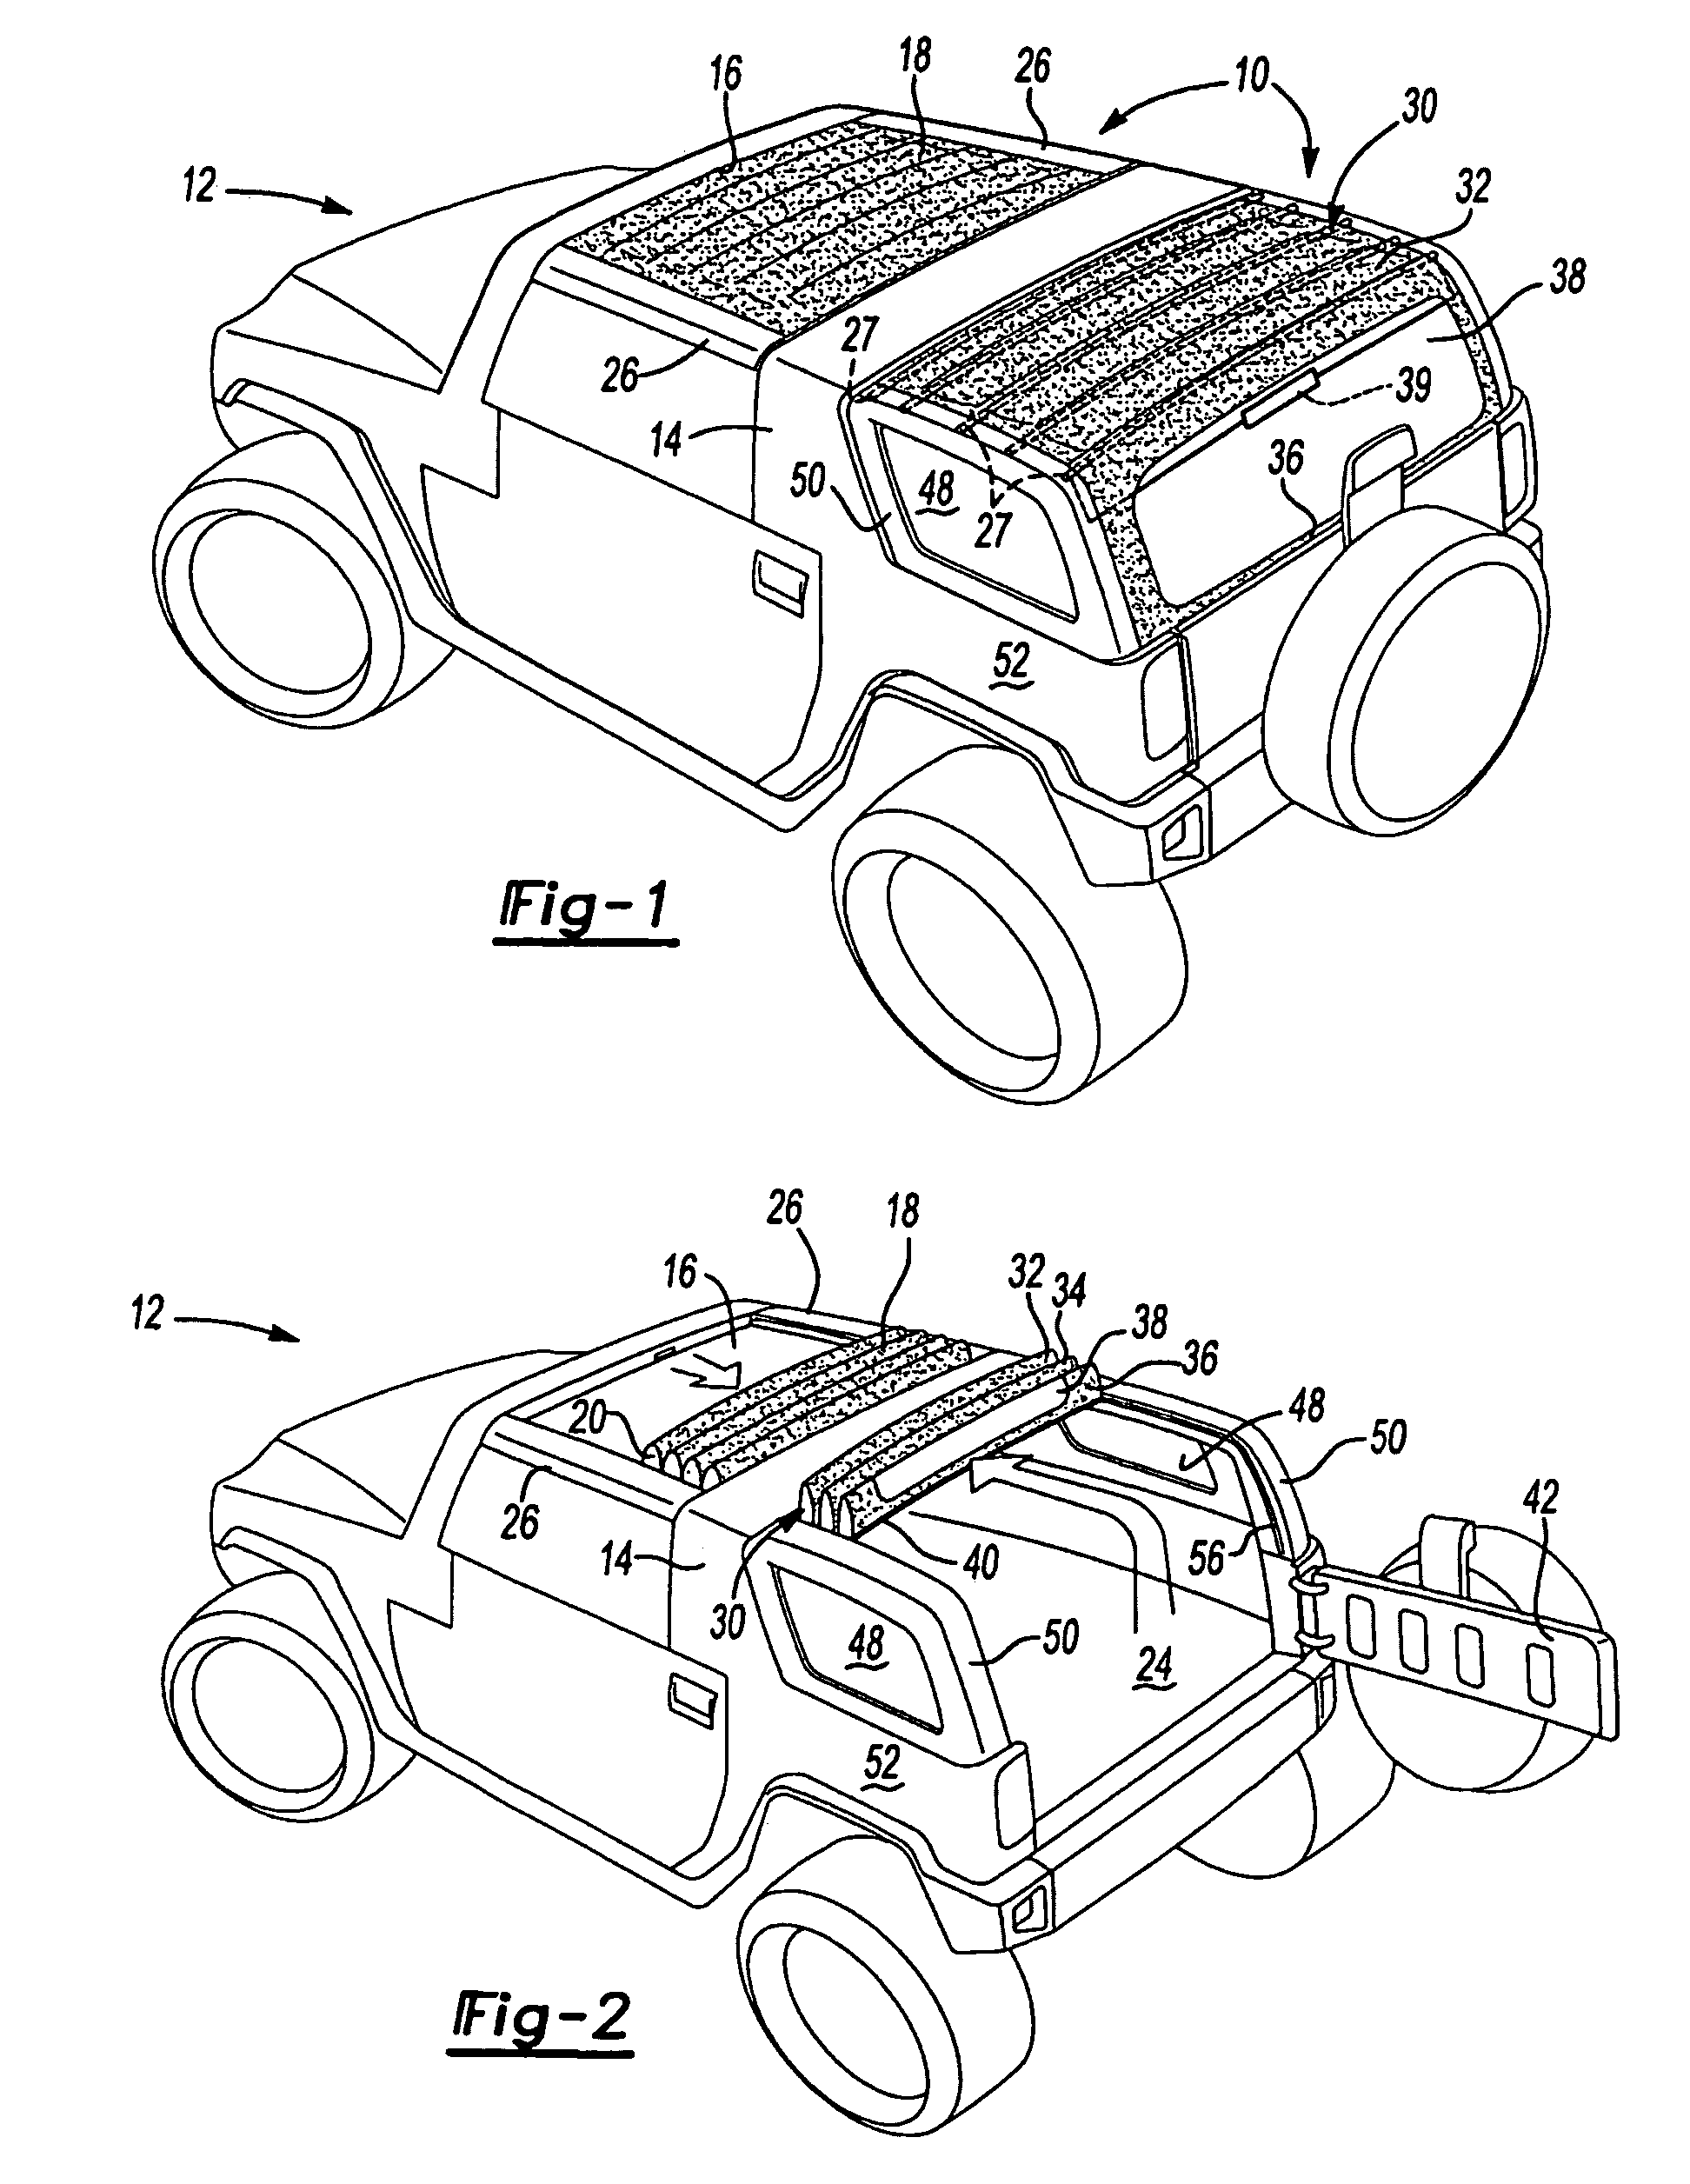 Modular convertible top